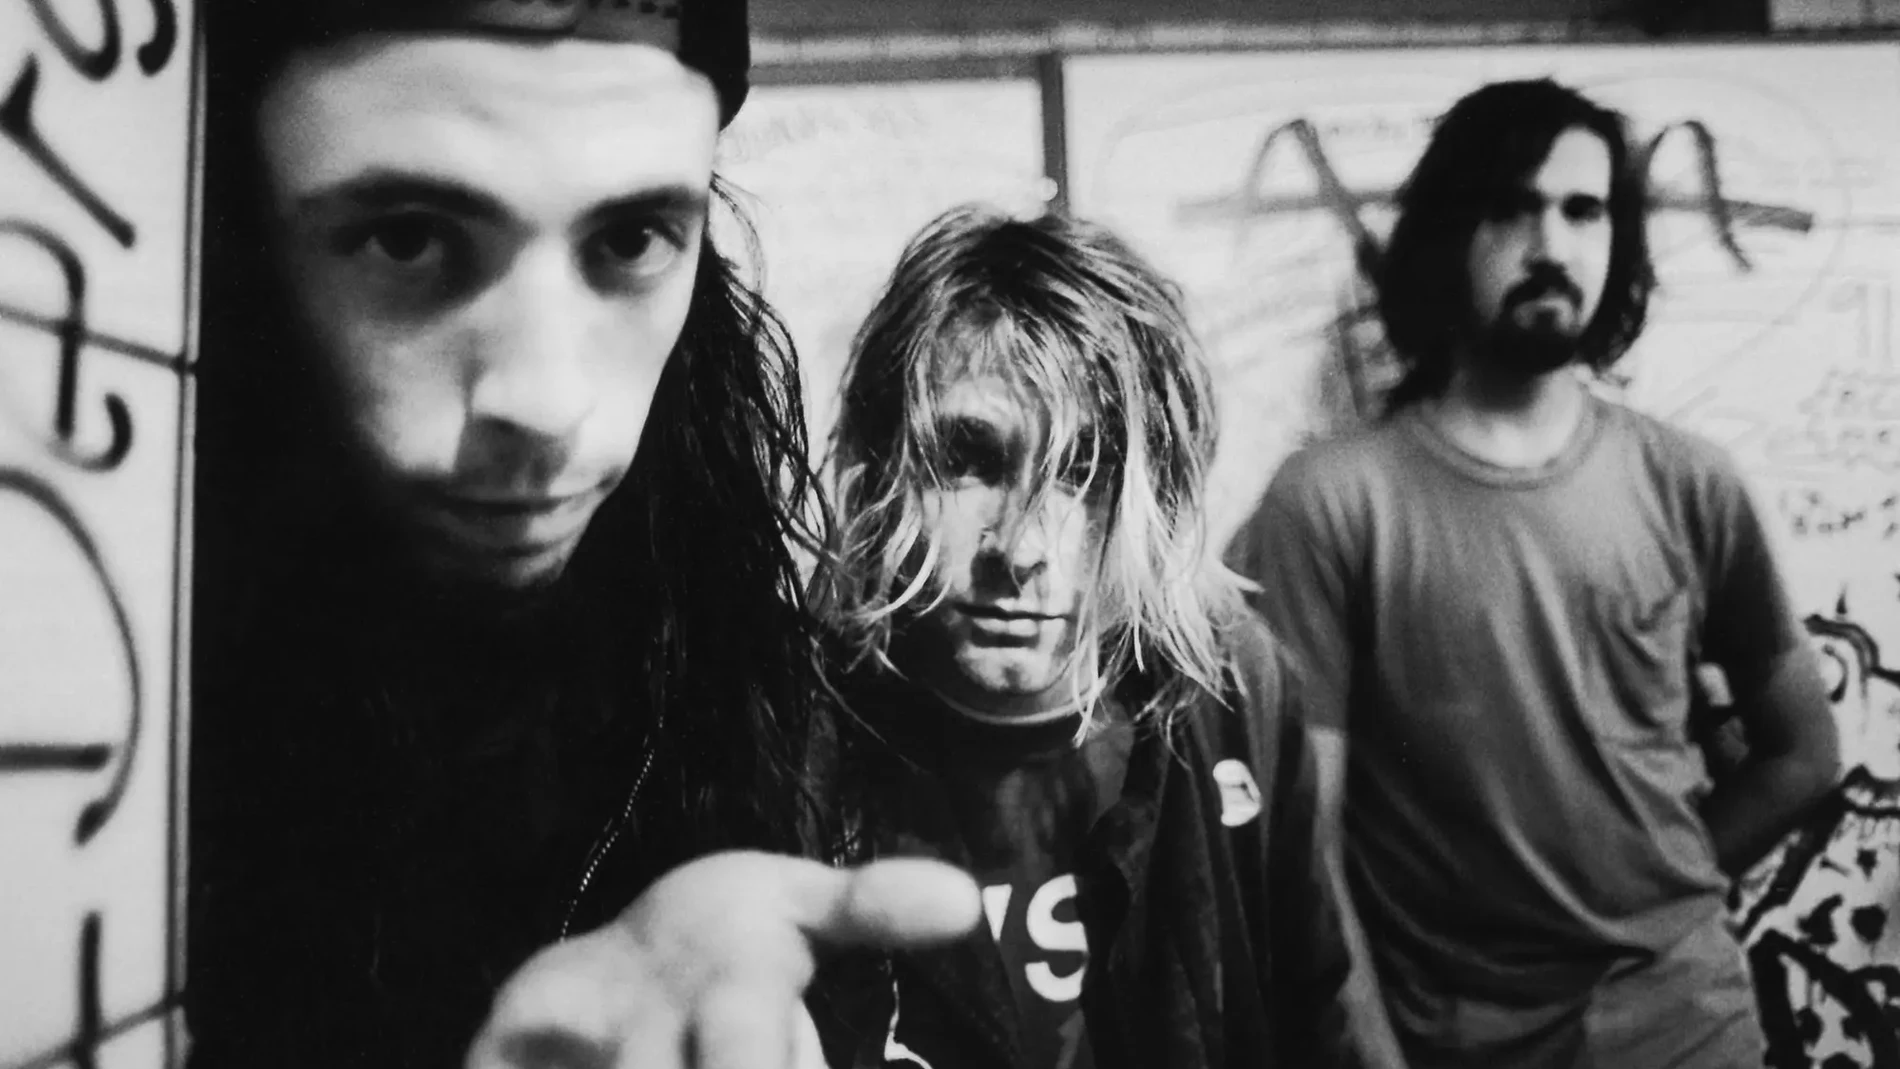 De izquierda a derecha, Dave Grohl, Kurt Cobain y Krist Novoselic, los miembros de Nirvana